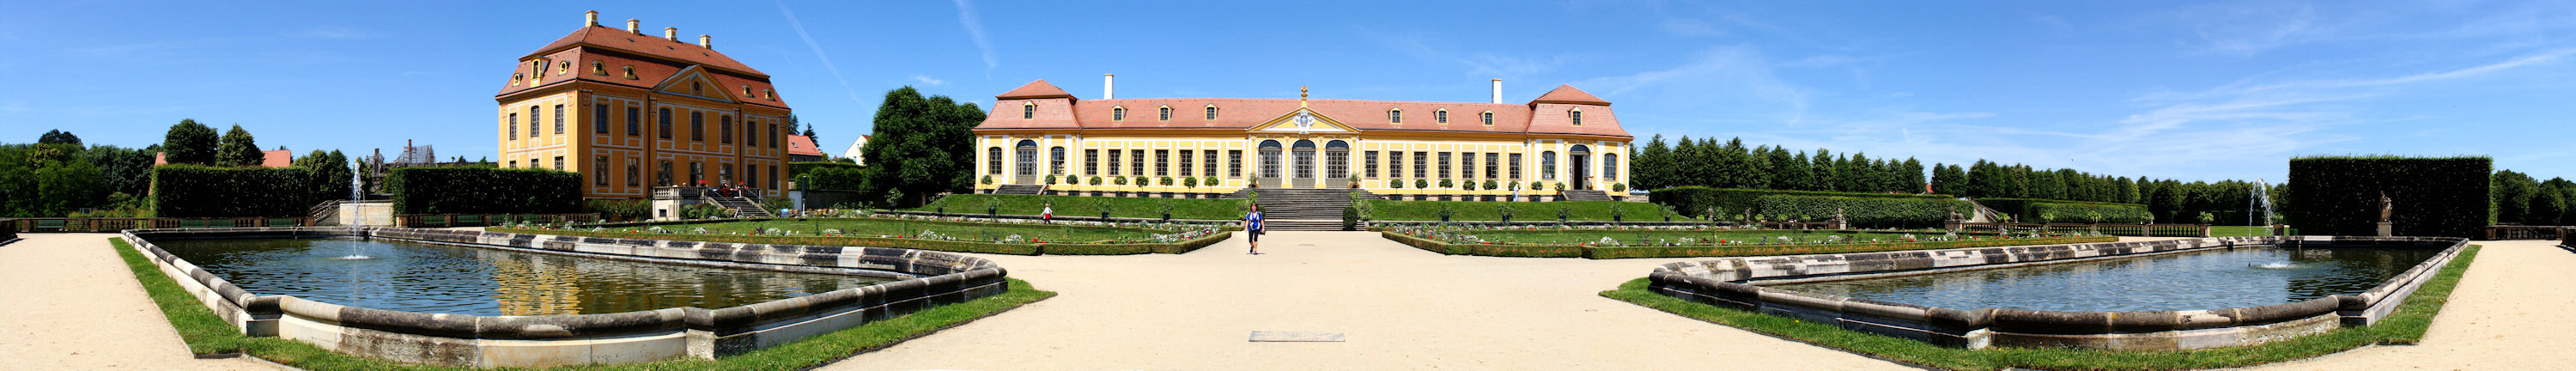 Barockgarten Großsedlitz>>>>>>>Friderichschlößchen und Obere Orangerie 2